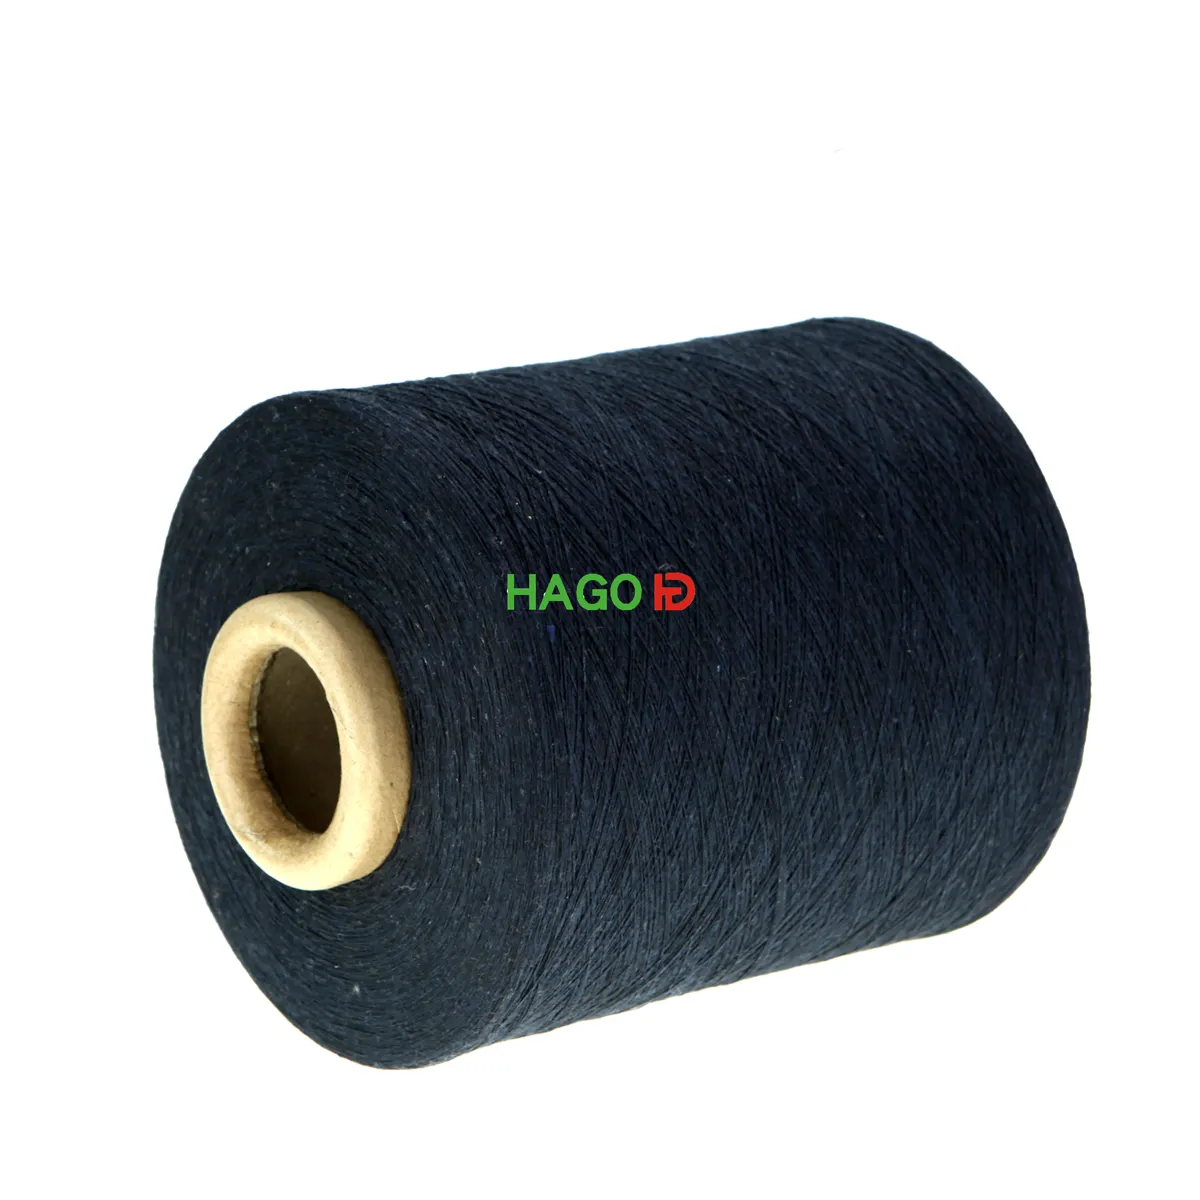 Yarn Factories in China Hago Bulk Cheap Cotton Yarn C Grade Glove Knitting